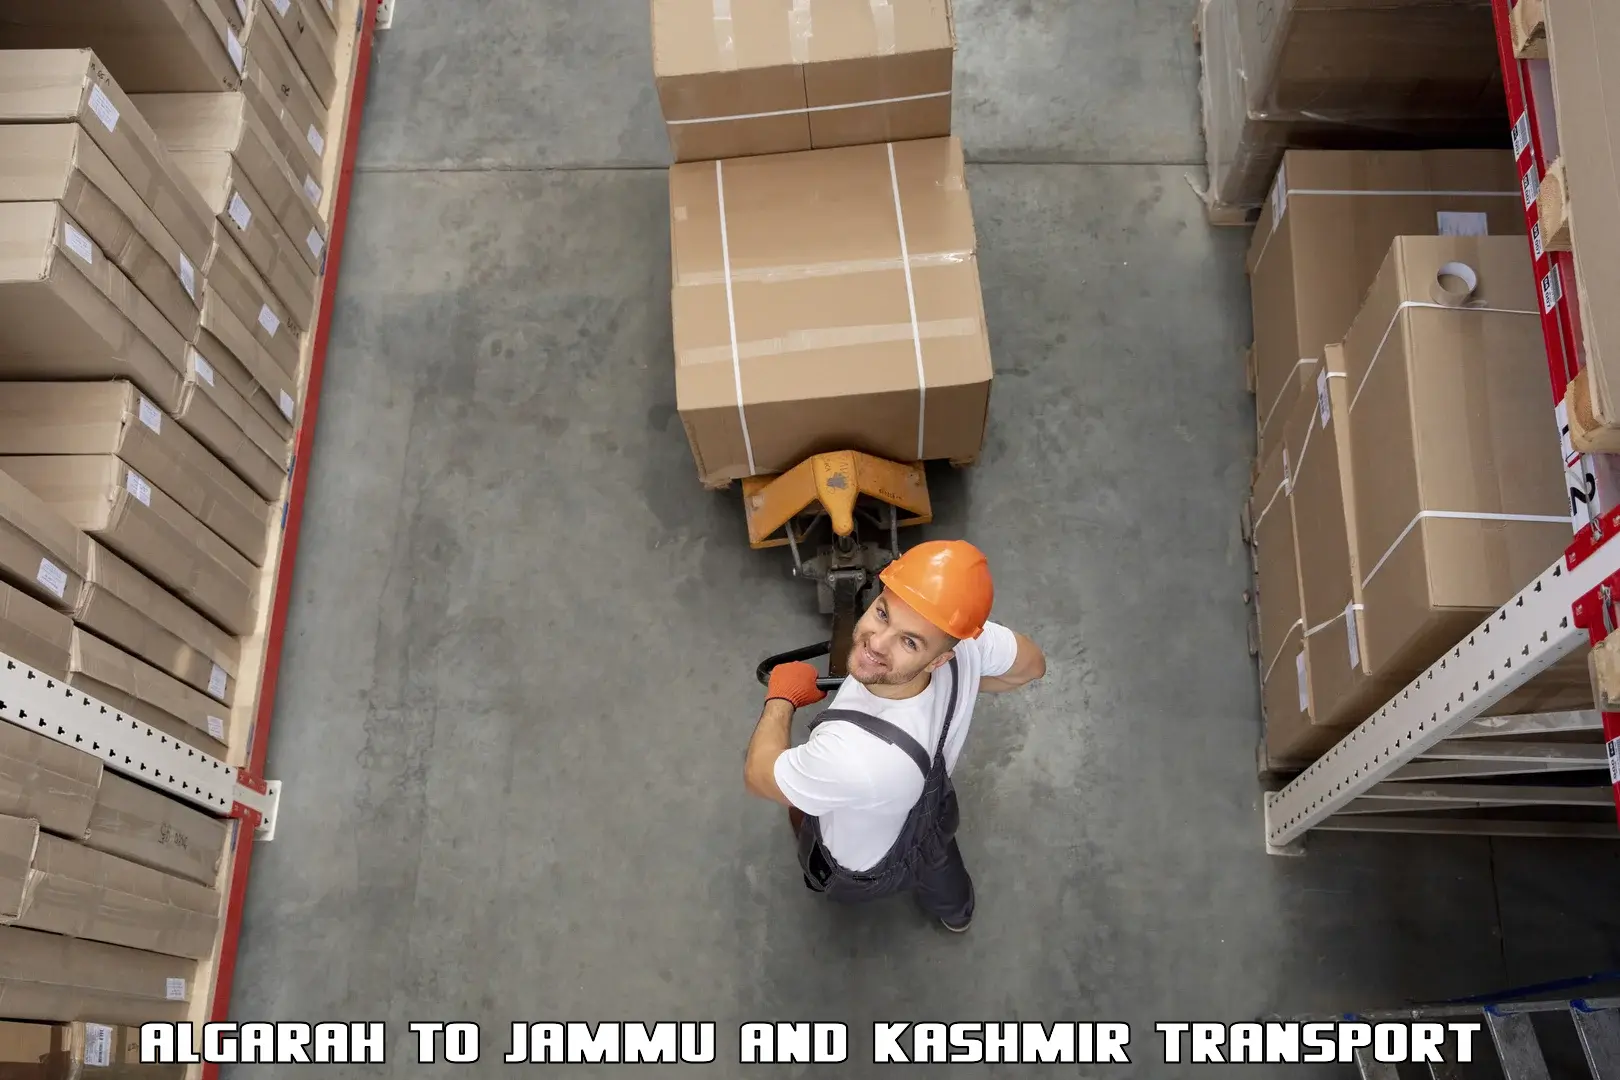 Truck transport companies in India Algarah to Kargil